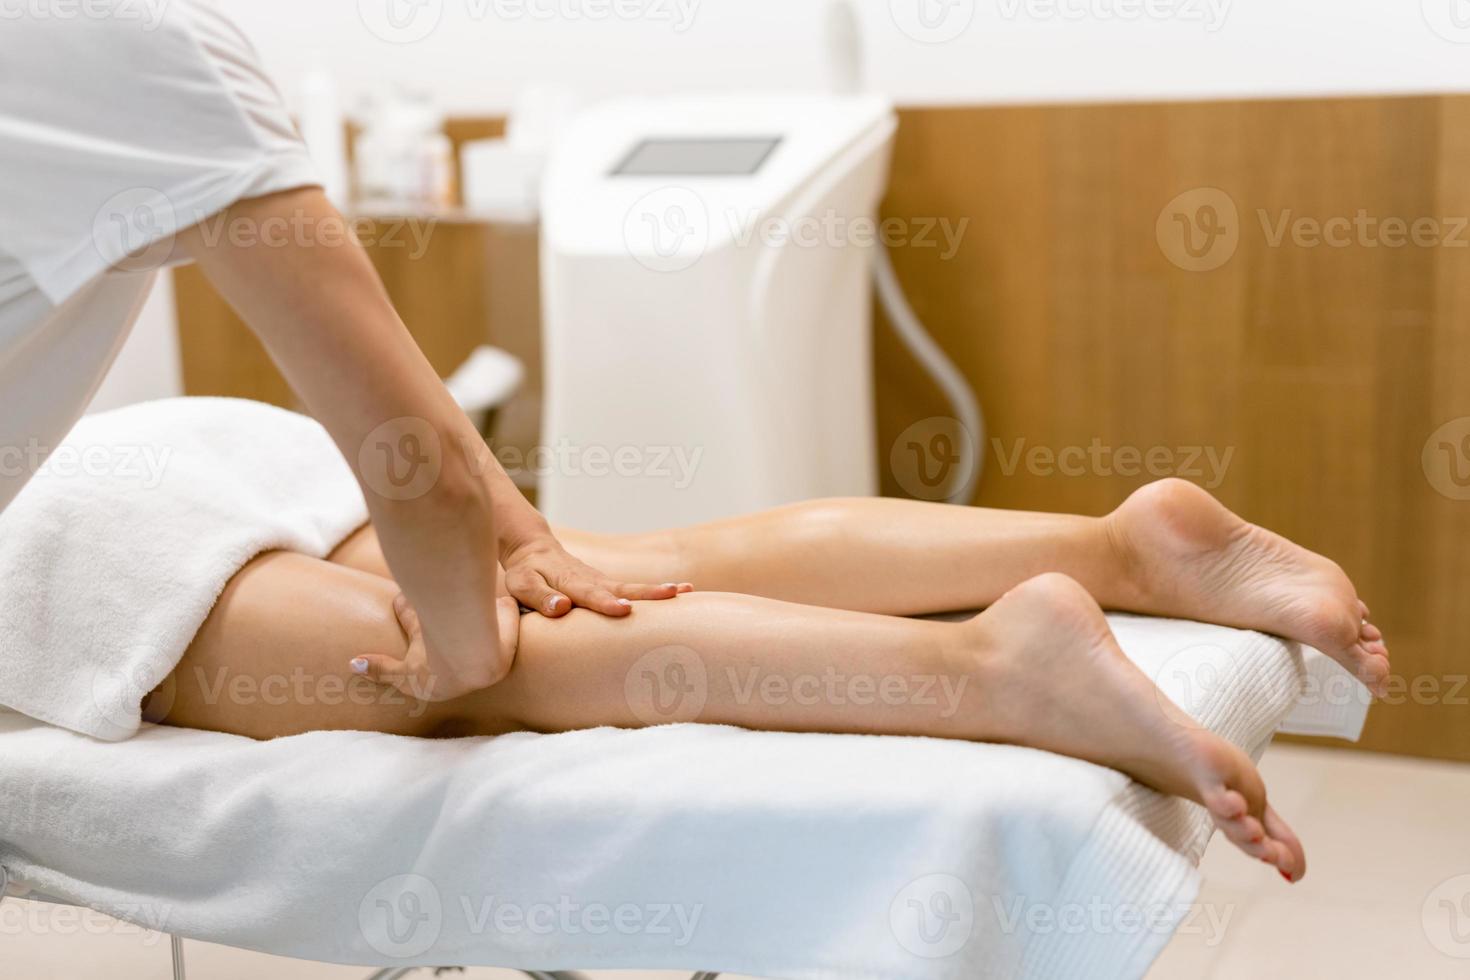 mulher de meia-idade, fazendo uma massagem nas pernas em um salão de beleza. foto